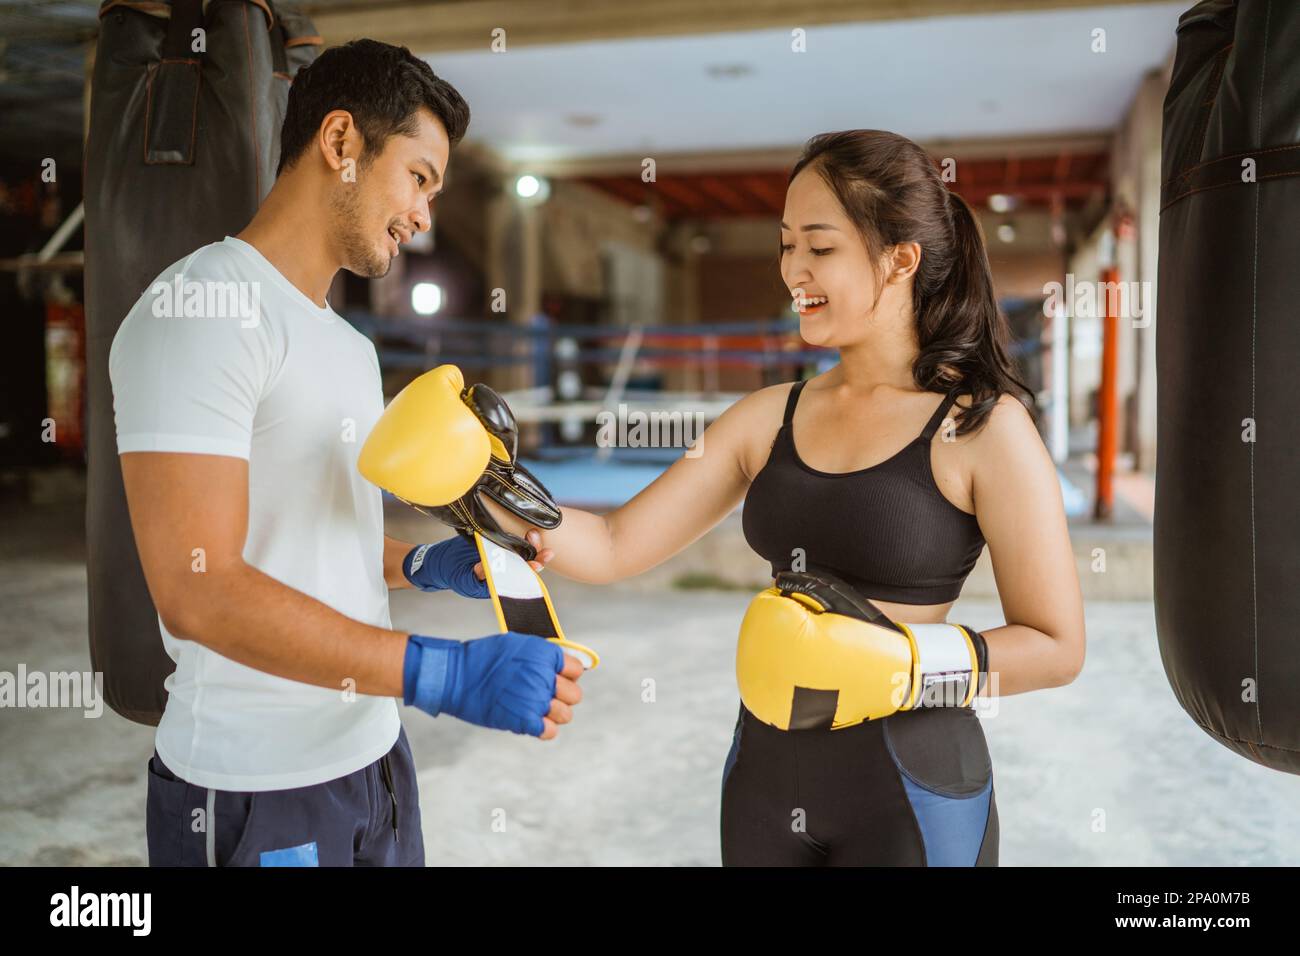 Ein Boxtrainer, der der Boxerin hilft, die Boxhandschuhe zu tragen Stockfoto